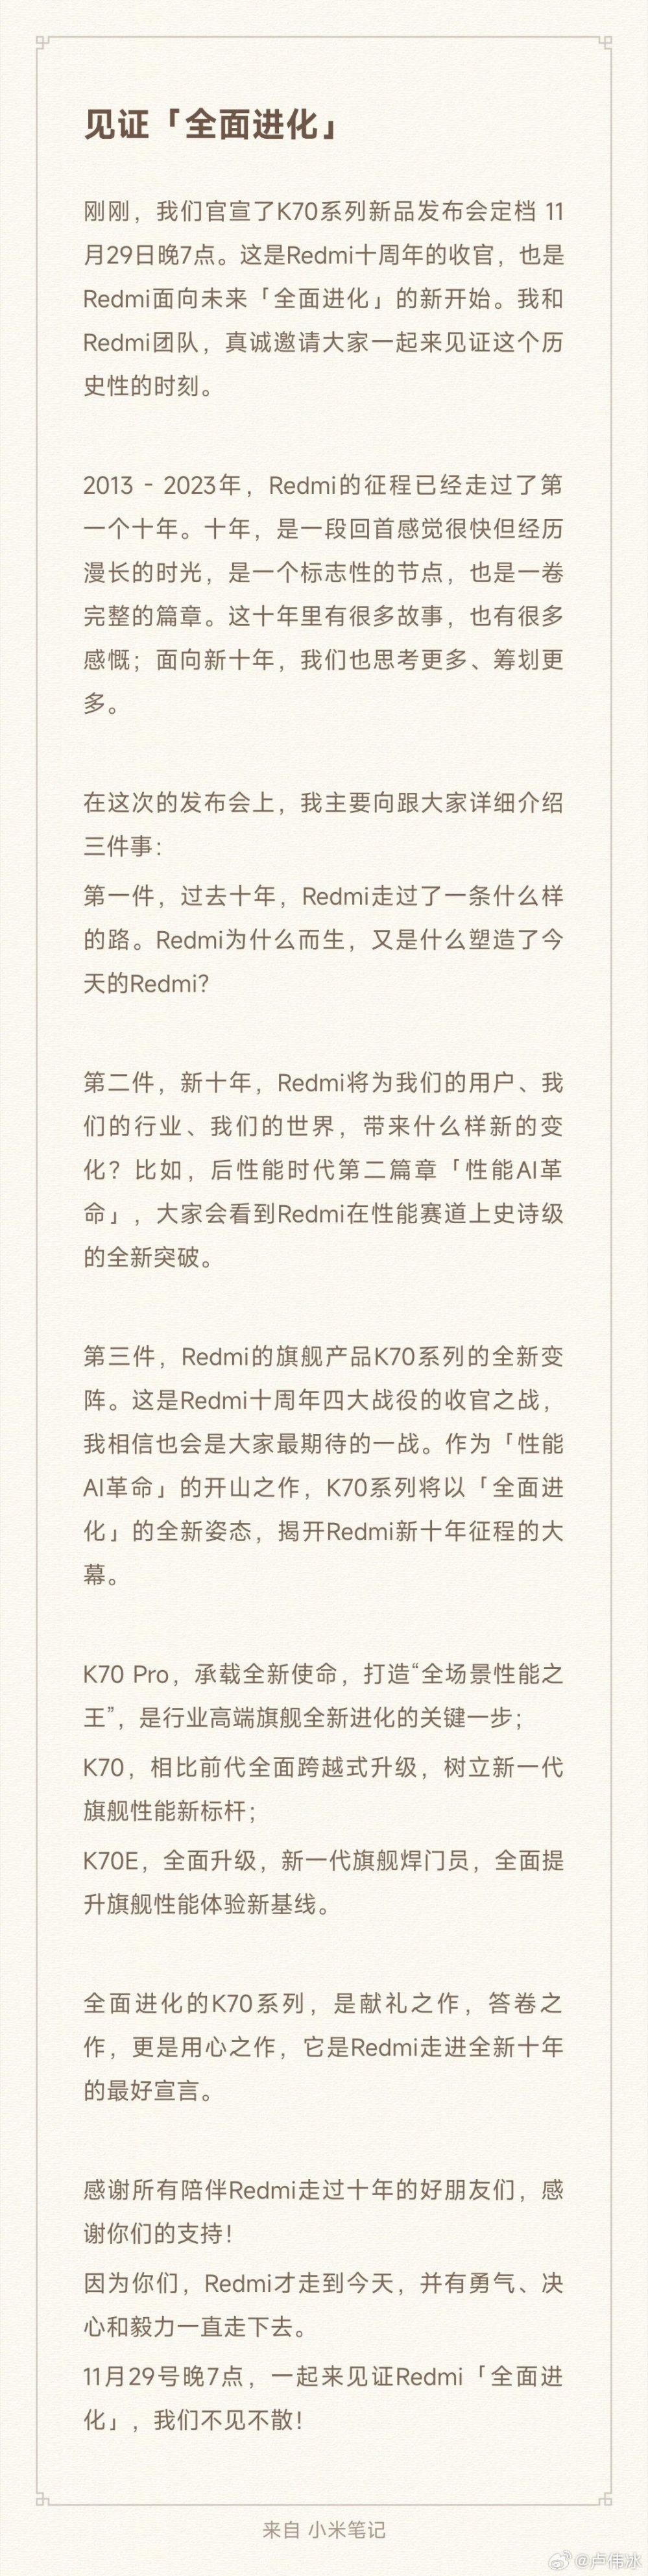 小米官宣Redmi十周年暨K70系列手机新品发布会